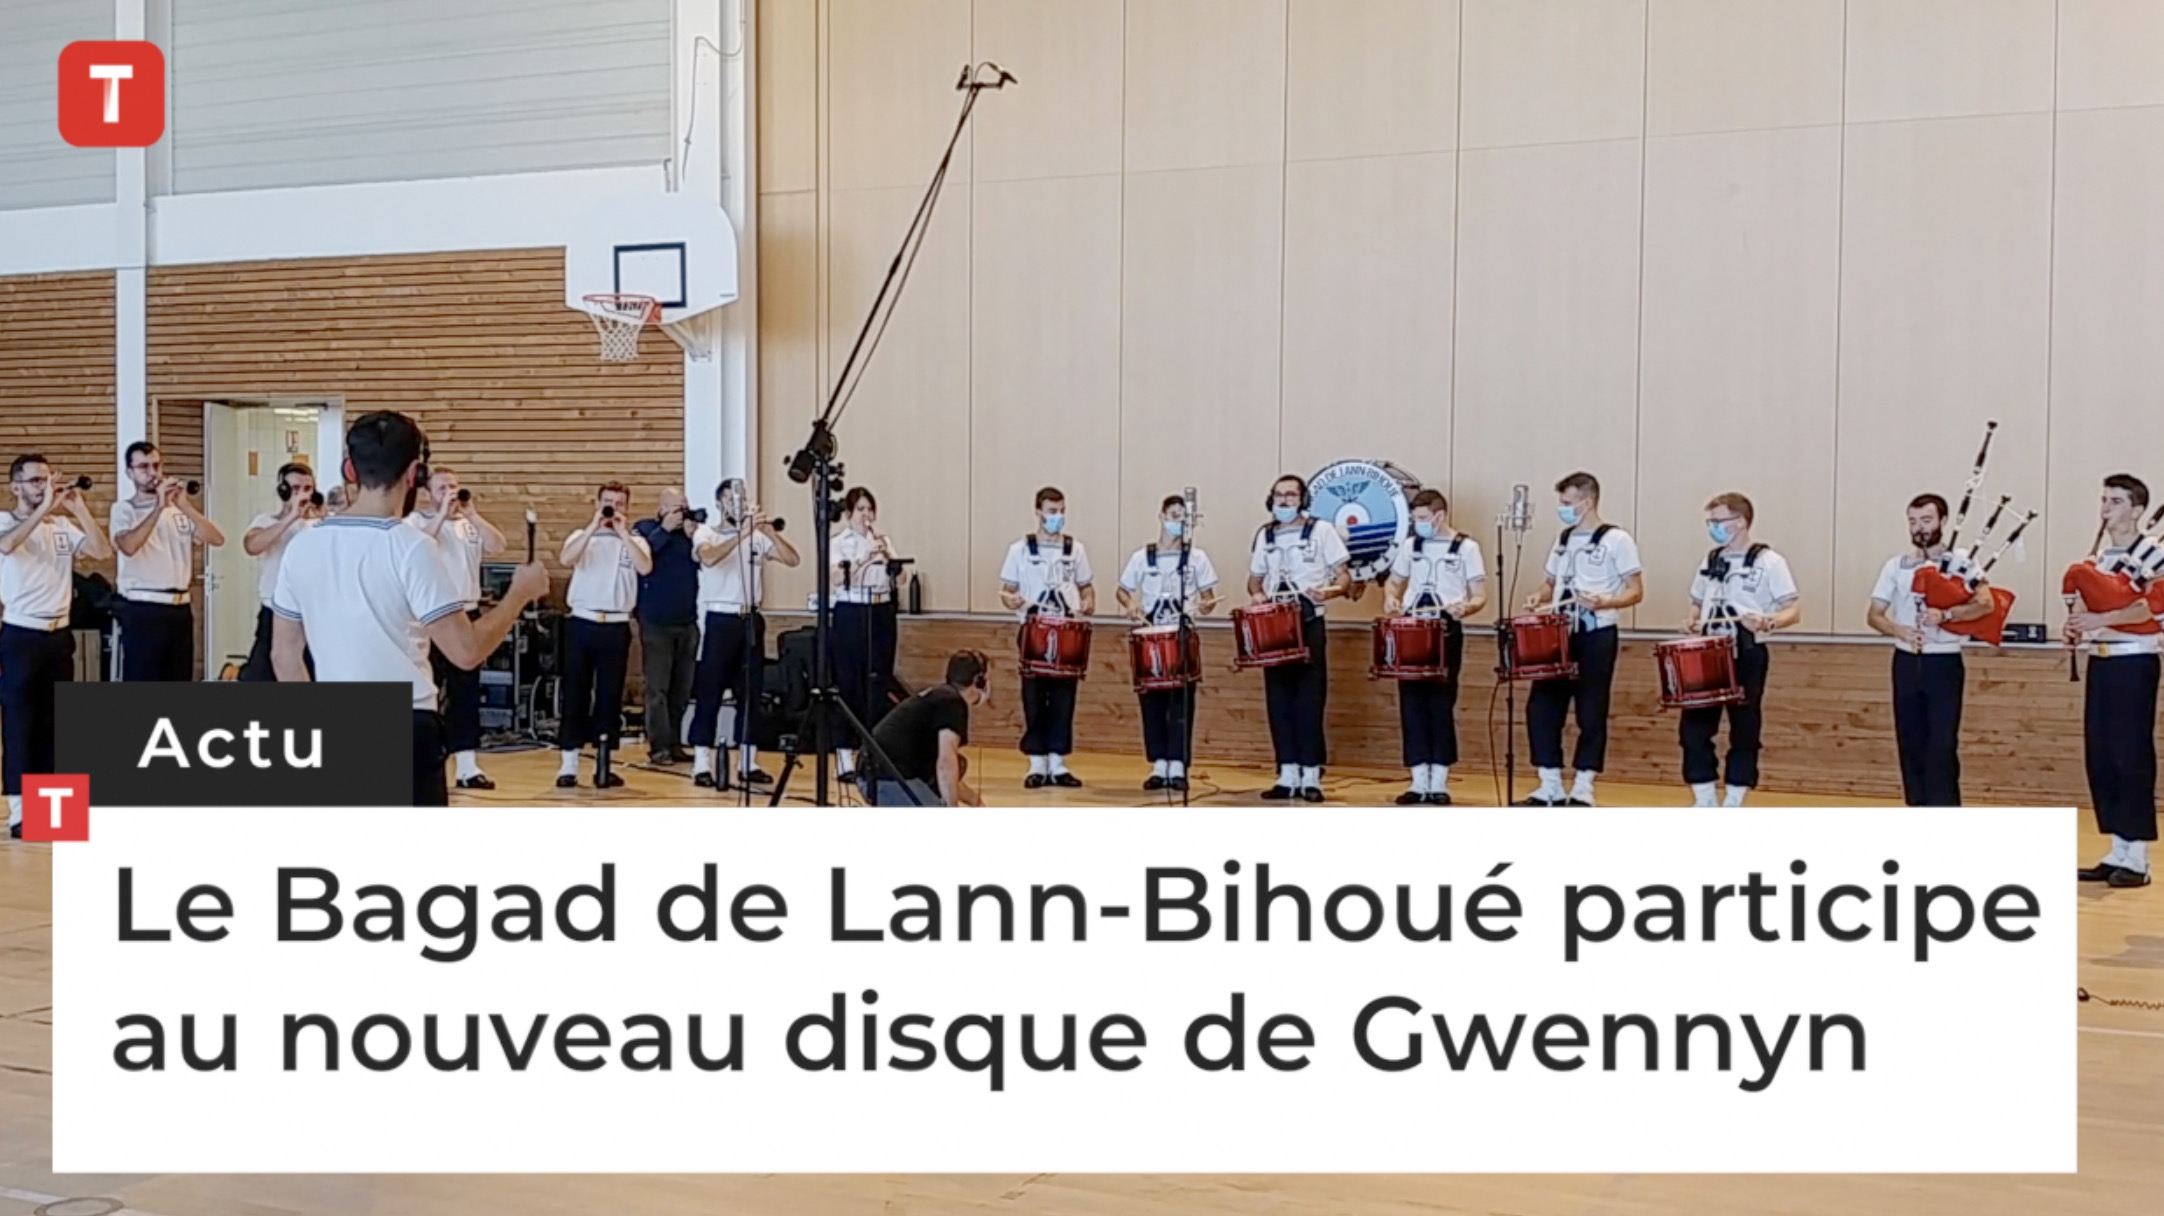 Le Bagad de Lann-Bihoué participe au nouveau disque de Gwennyn (Le Télégramme)